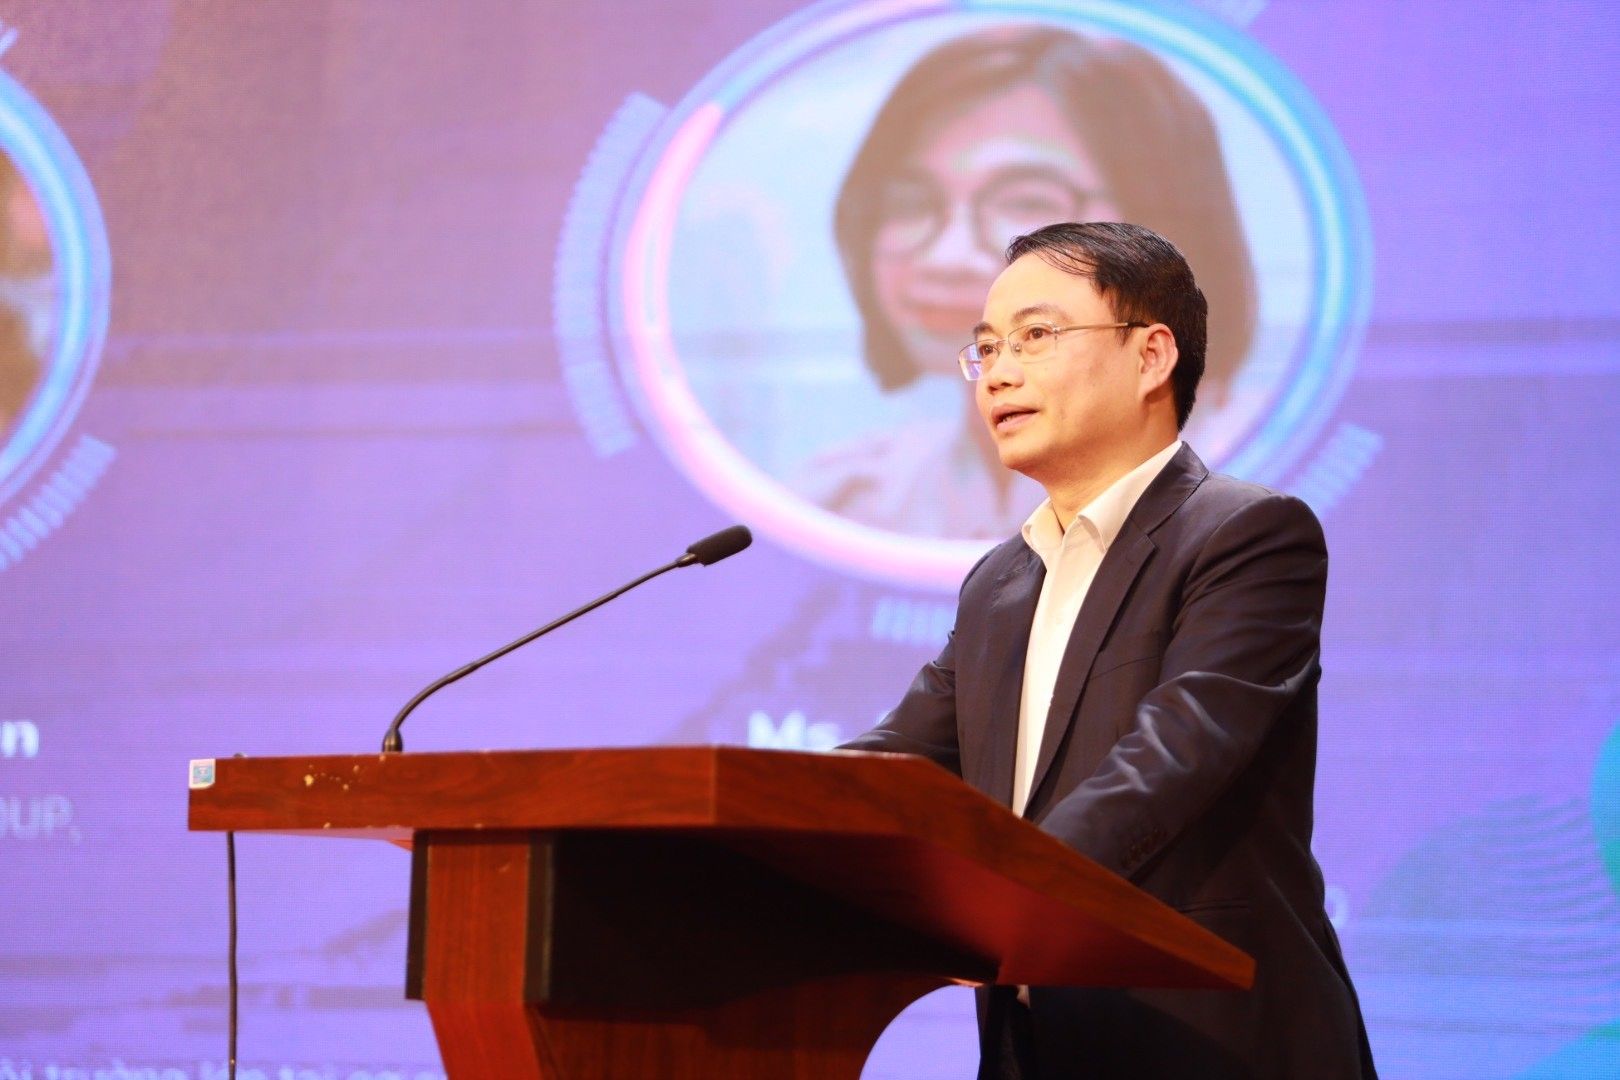 TS. Hoàng Đình Hương - Phó trưởng khoa Kinh tế Tài nguyên và Môi trường khai mạc buổi tọa đàm.